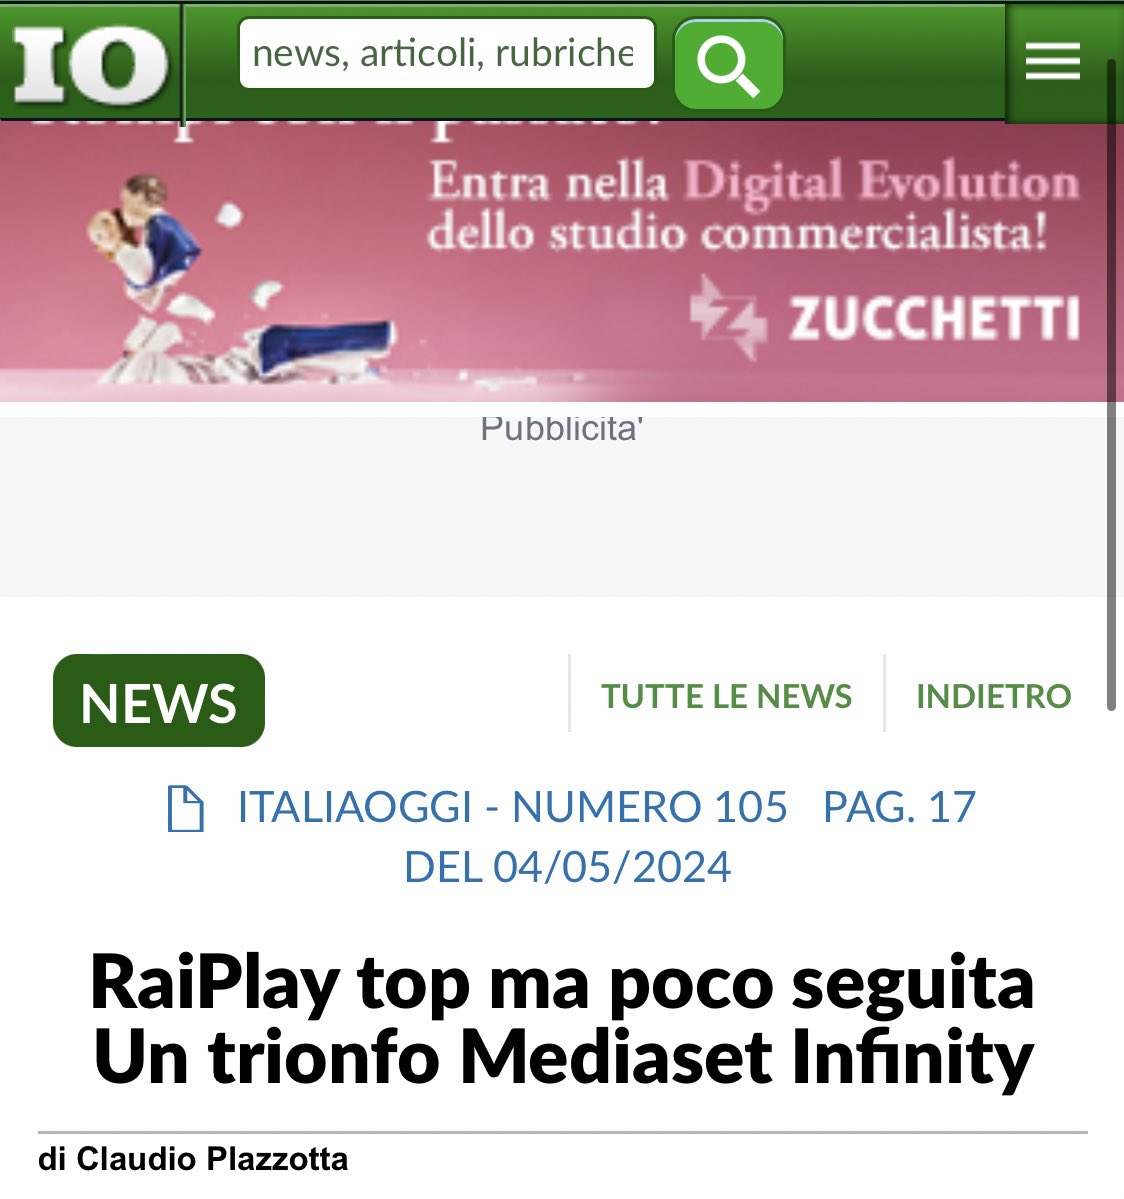 Anche Italiaoggi (stranamente) se ne é accorta,  visto che sono uno dei pochi forse l’unico che ogni settimana sottolinea i risultatti record di #MediasetInfinity con oltre 190 milioni di  stream settimanali, flop raiplay!! 

#Ascoltitv